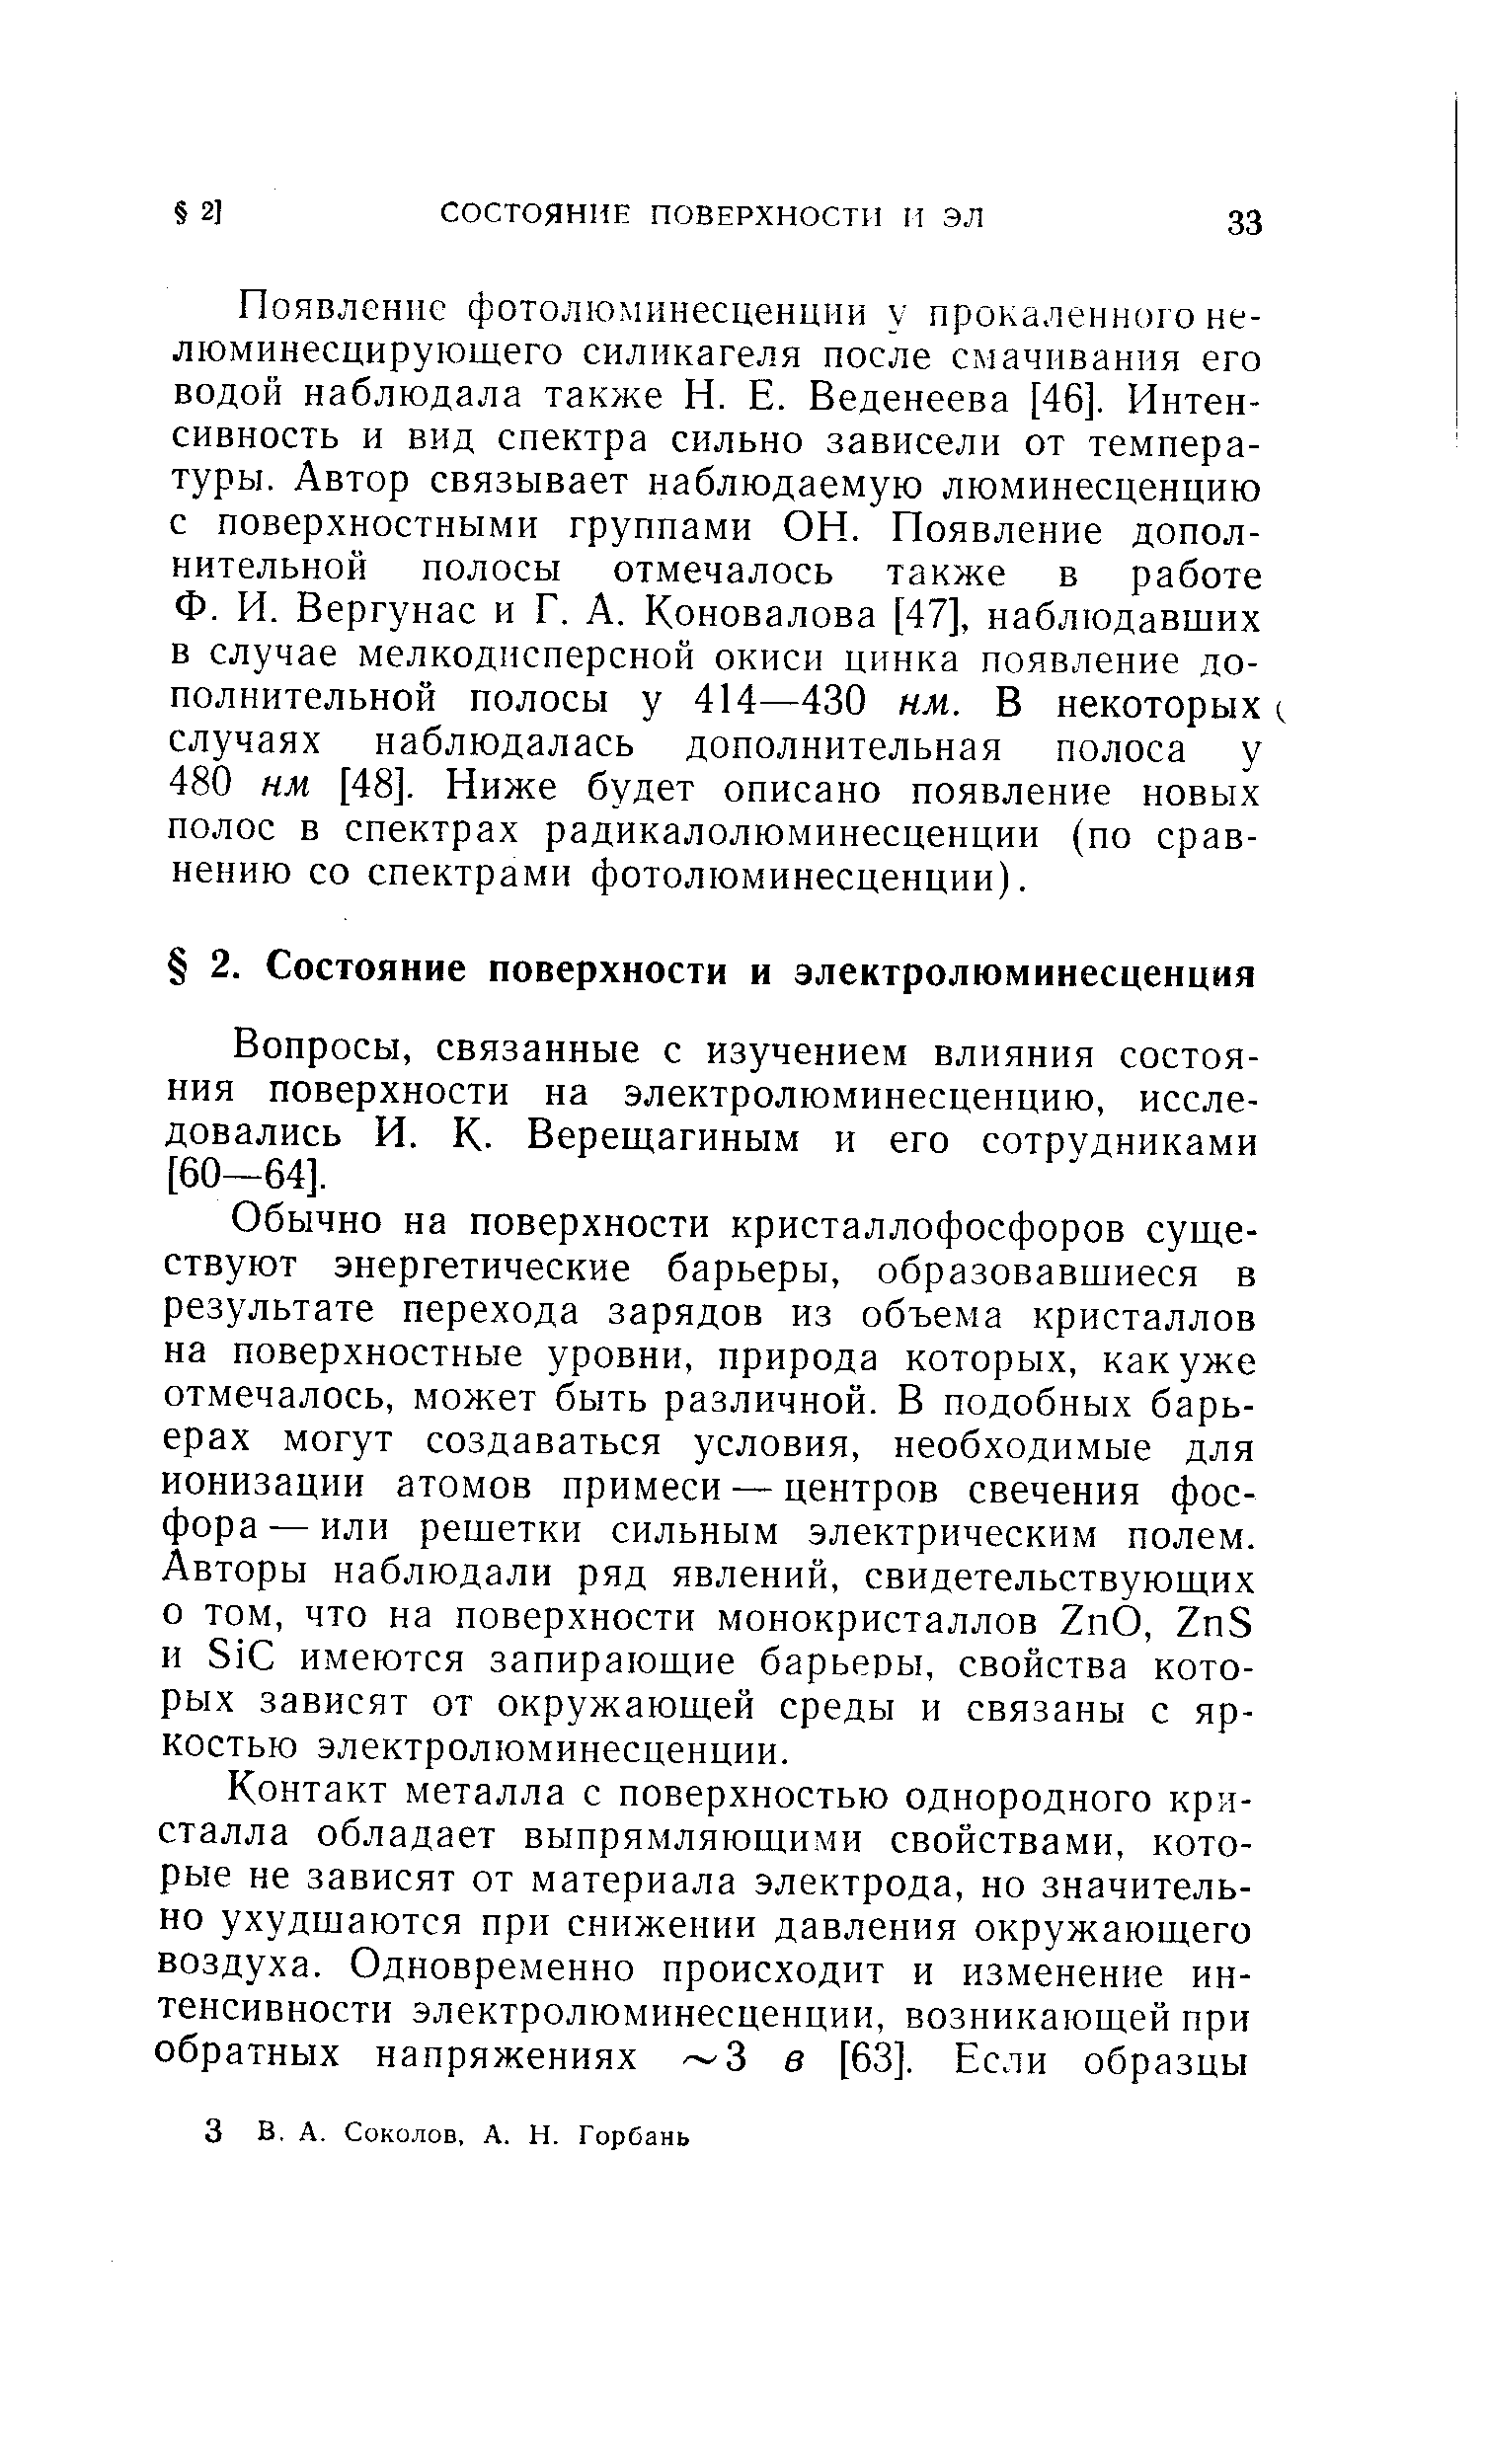 Вопросы, связанные с изучением влияния состояния поверхности на электролюминесценцию, исследовались И. К. Верещагиным и его сотрудниками [60—64].